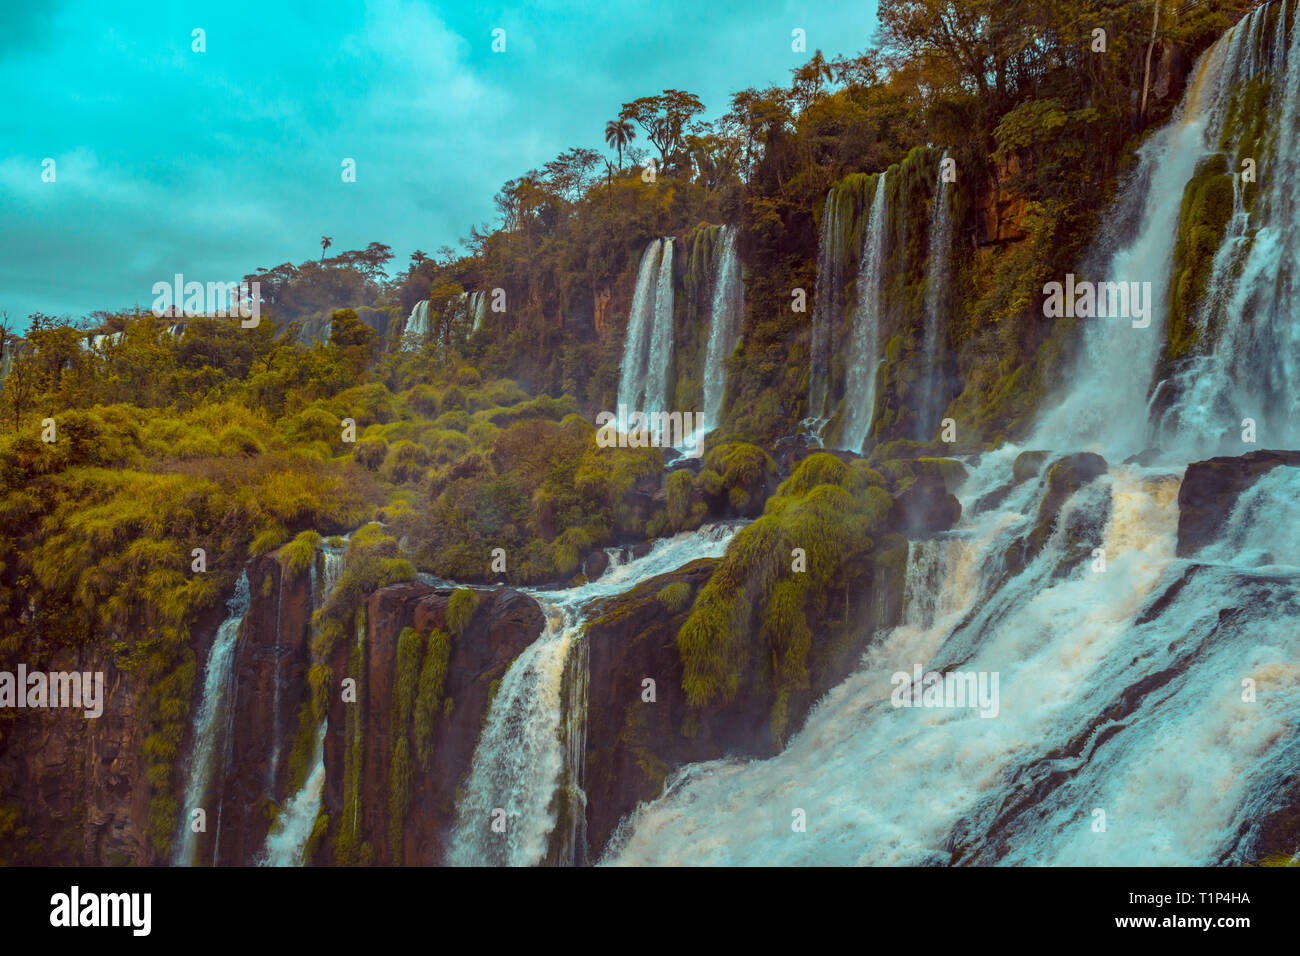 Chutes d'Iguazú sont les cascades de la rivière Iguazu à la frontière de la province argentine de Misiones et de l'état brésilien du Paraná. Banque D'Images